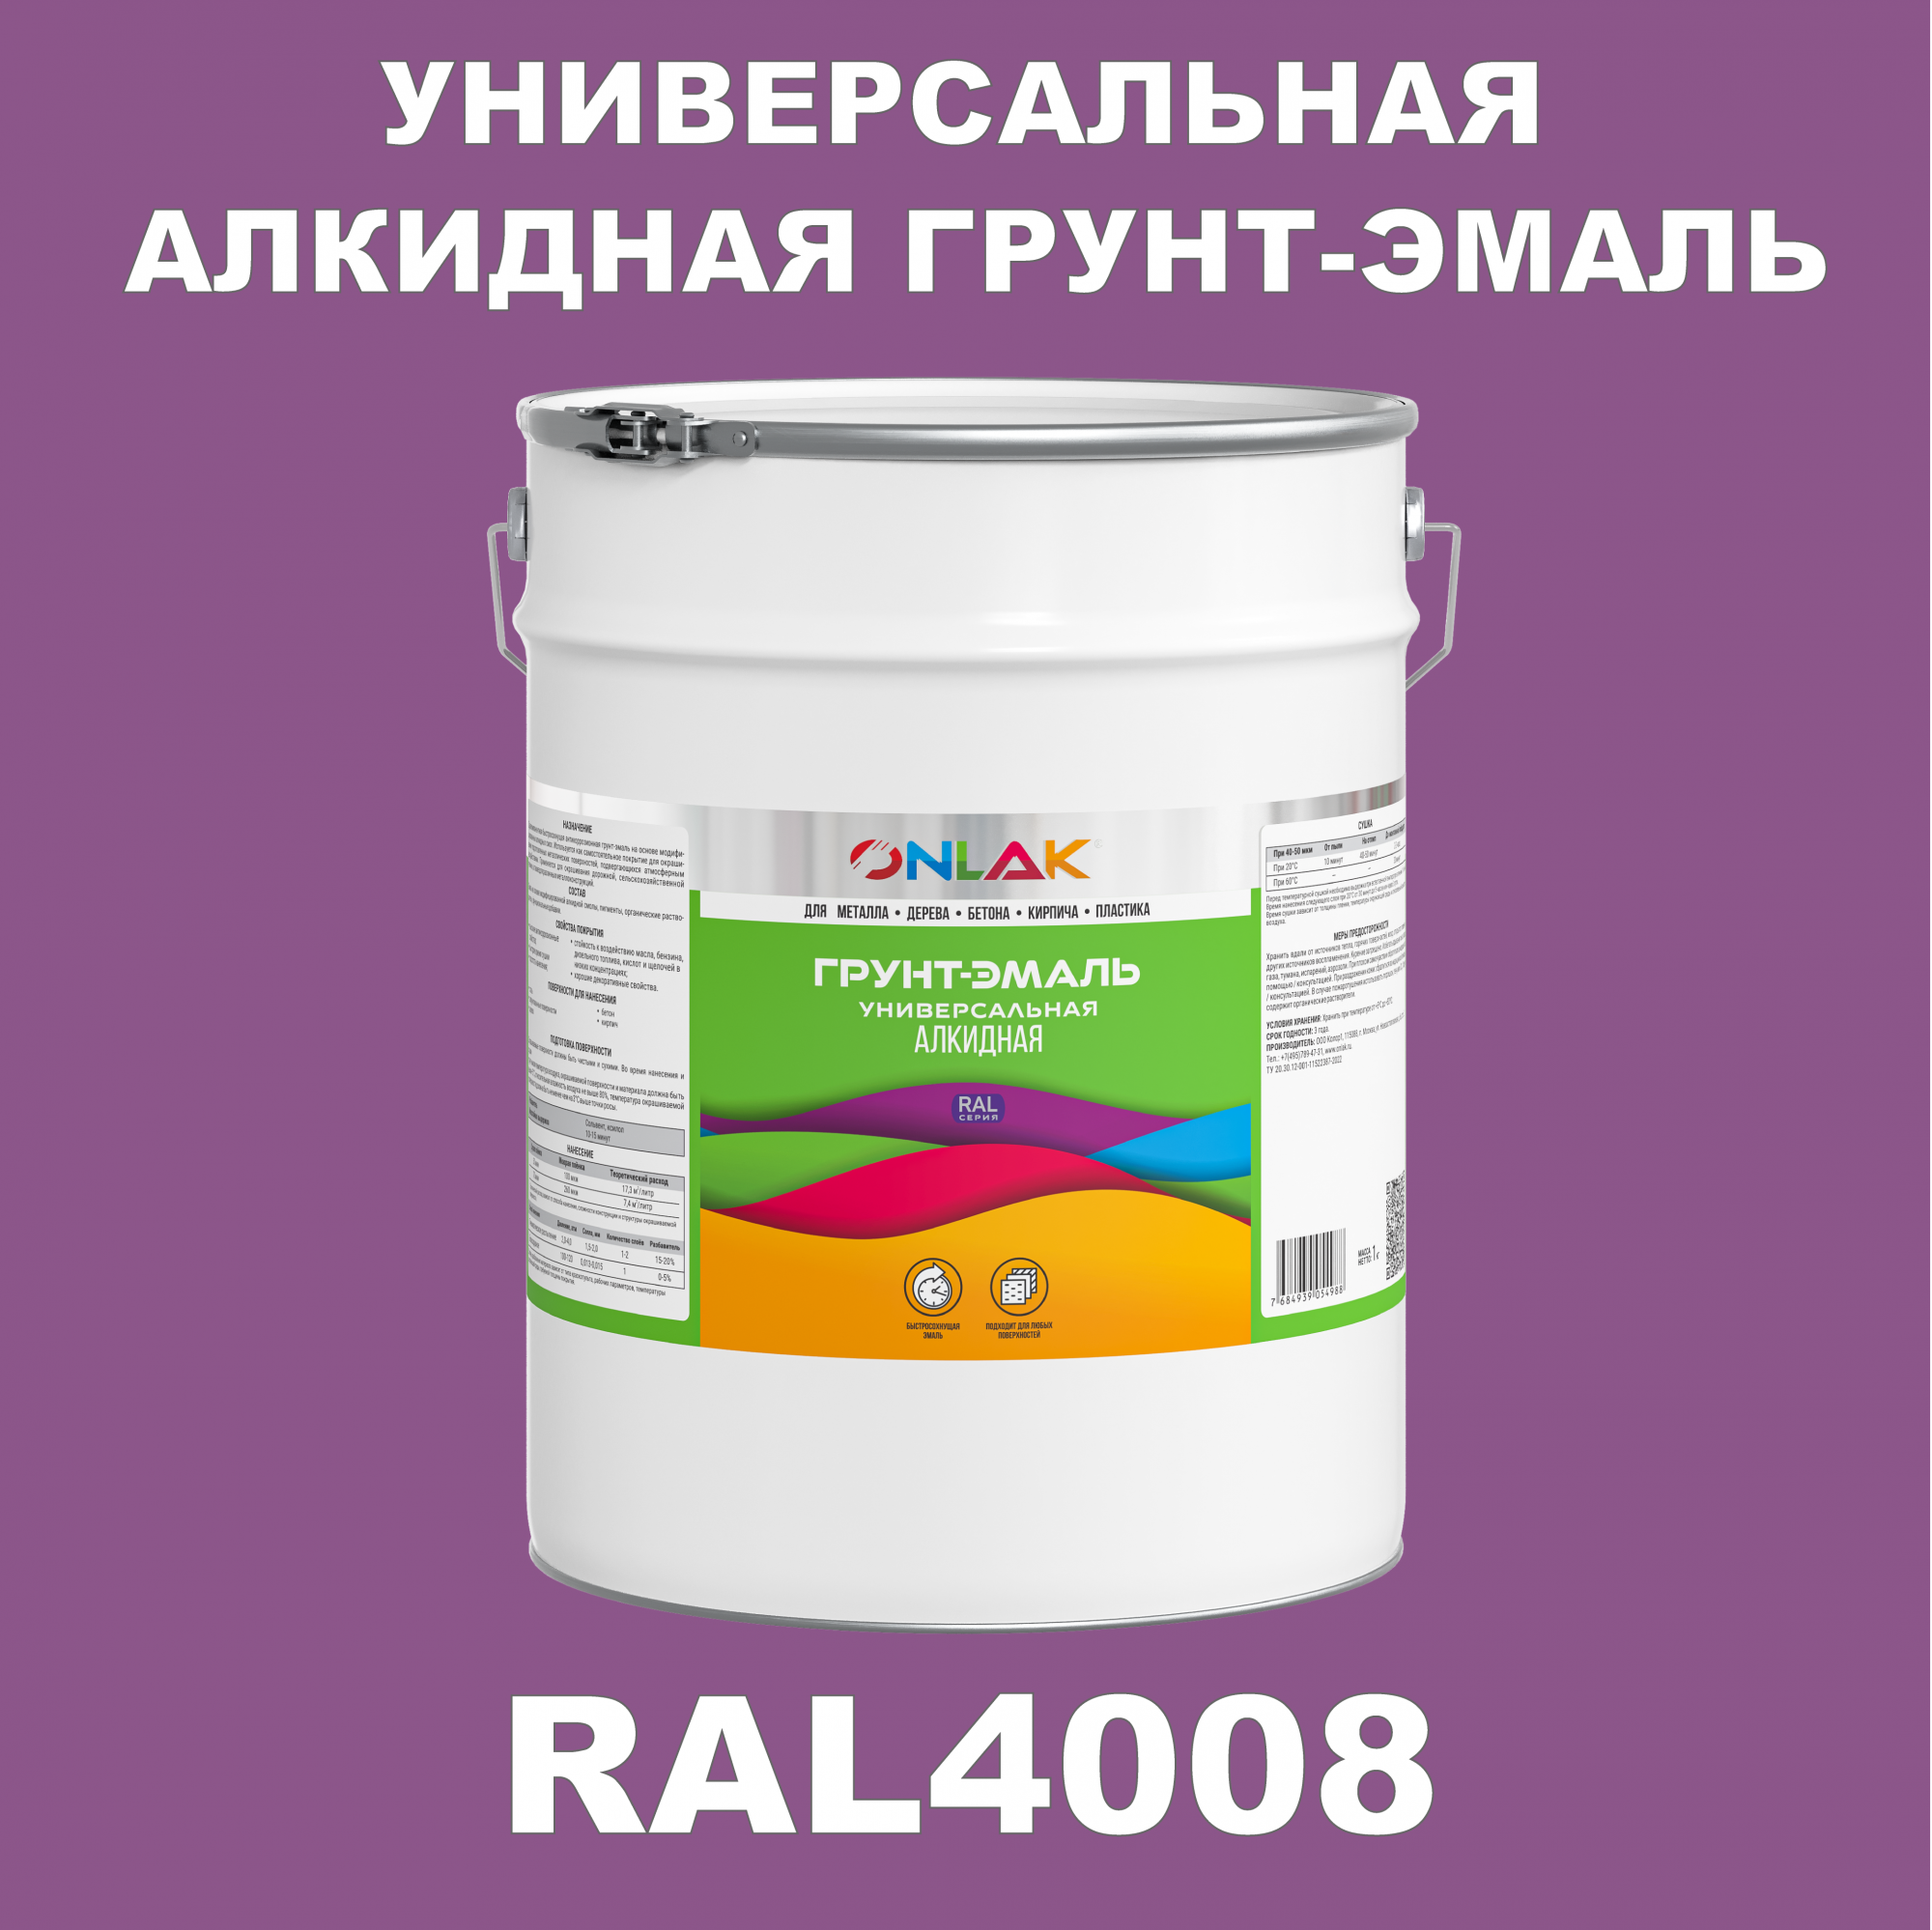 Грунт-эмаль ONLAK 1К RAL4008 антикоррозионная алкидная по металлу по ржавчине 20 кг artuniq color violet ной грунт для аквариума фиолетовый 1 кг